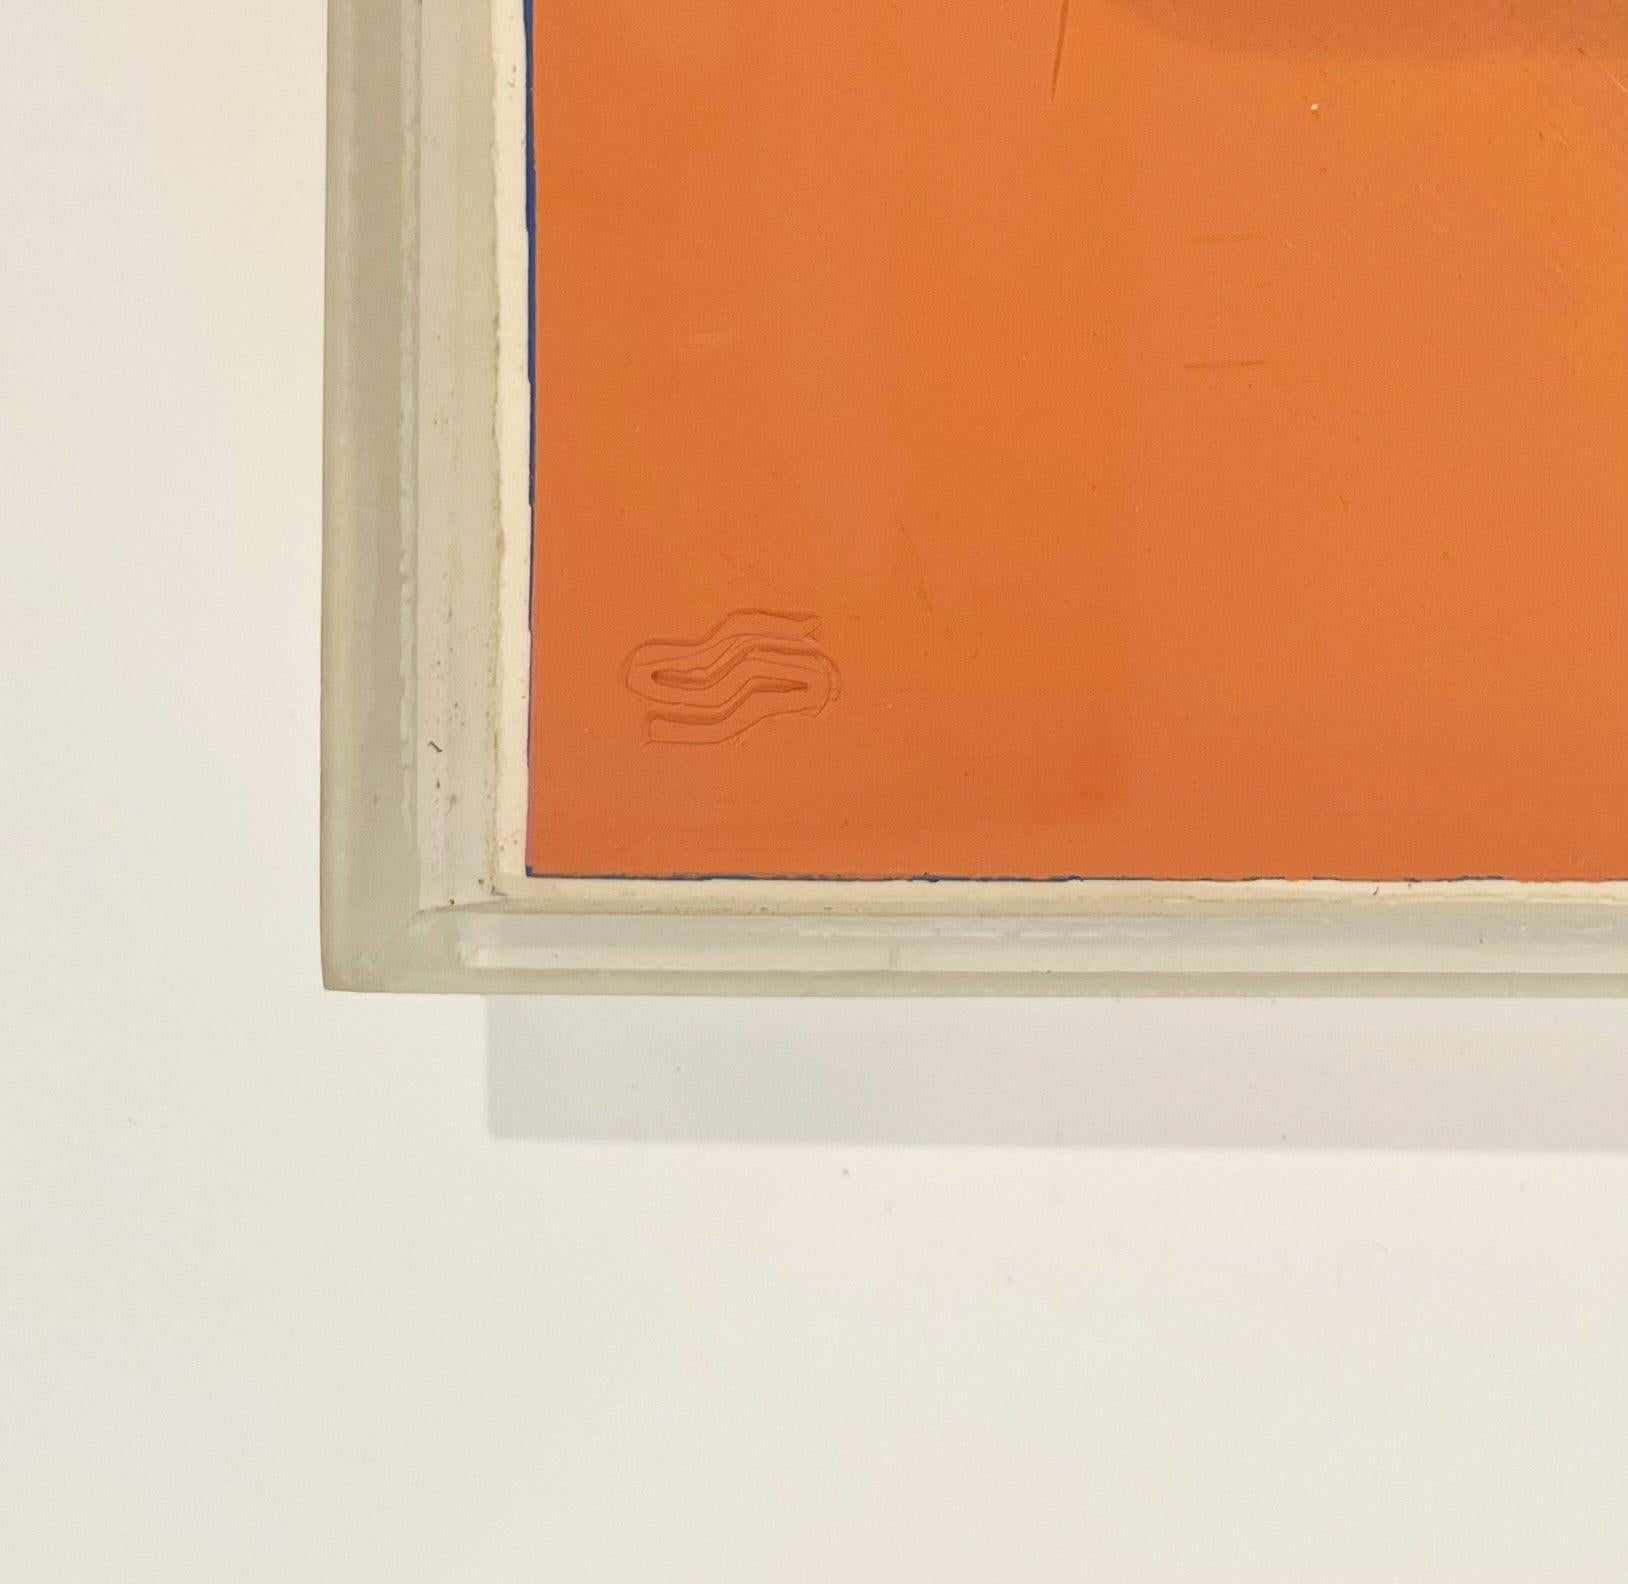 Künstler: Andy Warhol
Titel: Gertrude Stein
Mappe: Zehn Porträts von Juden des zwanzigsten Jahrhunderts
Medium: Siebdruck auf Lenox Museum Board
Datum: 1980
Auflage: 34/200
Blattgröße: 40